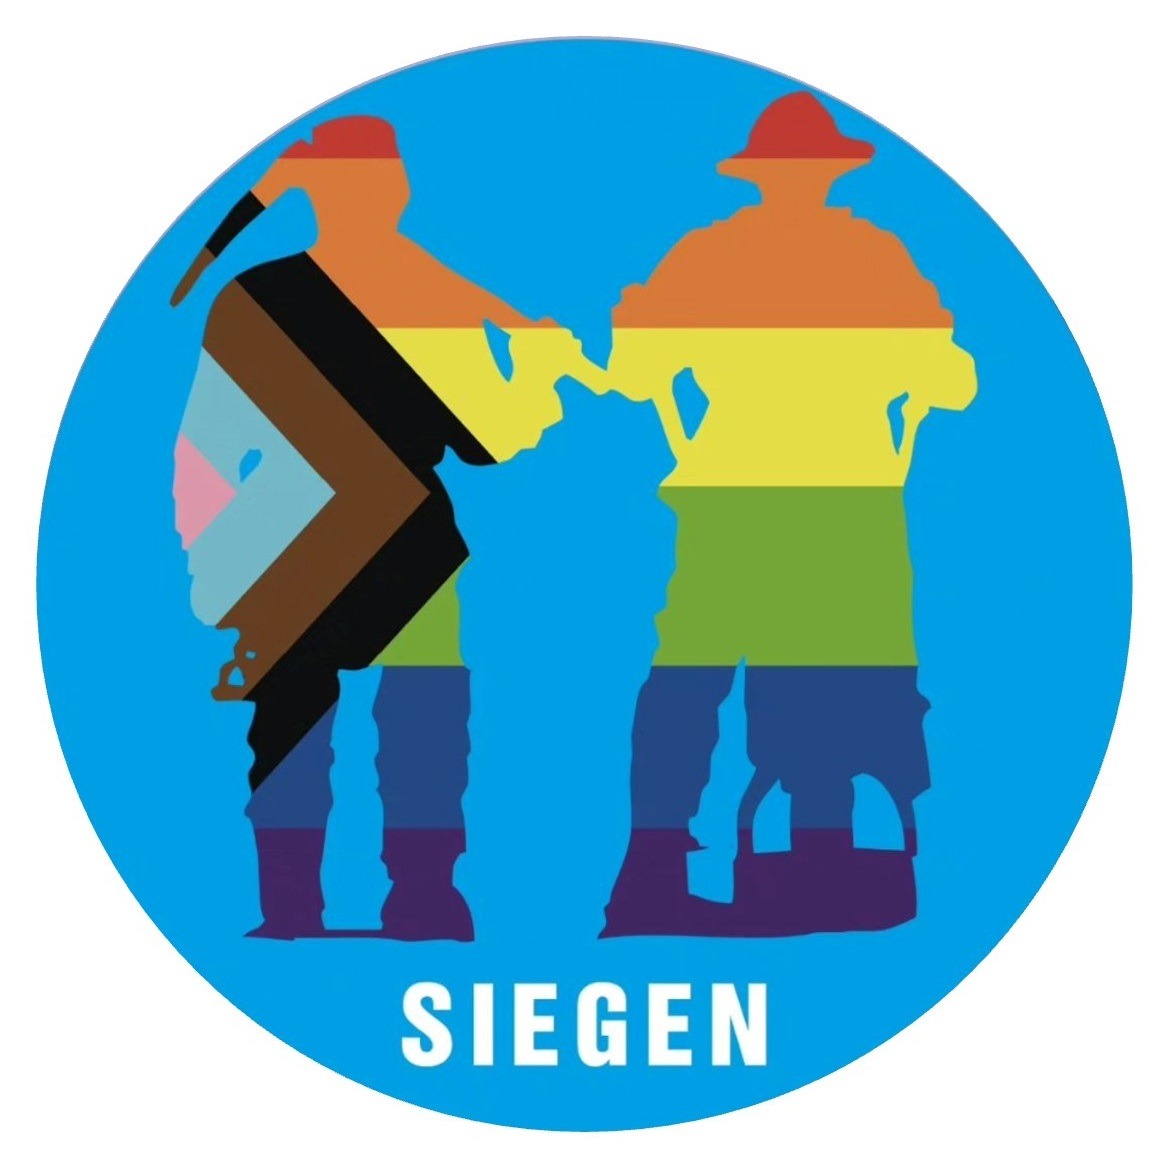 Regenbogen, zwei Bergmänner, bunt, queer, blauer Hintergrund, Wort SIEGEN, Stadt